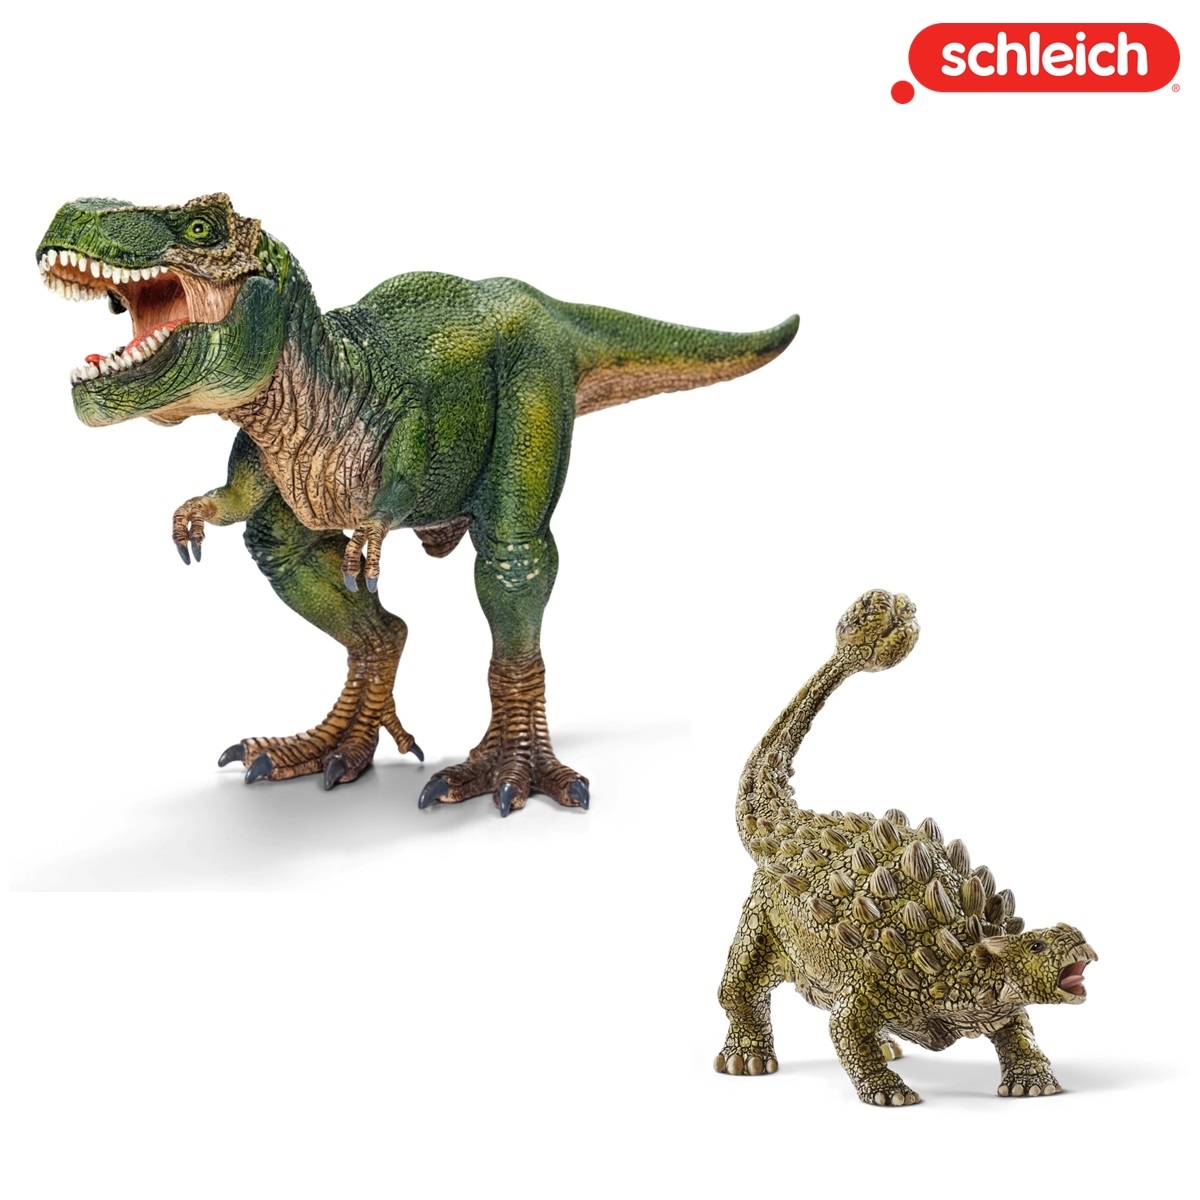 【シュライヒ】ティラノサウルス・アンキロサウルス 恐竜セット